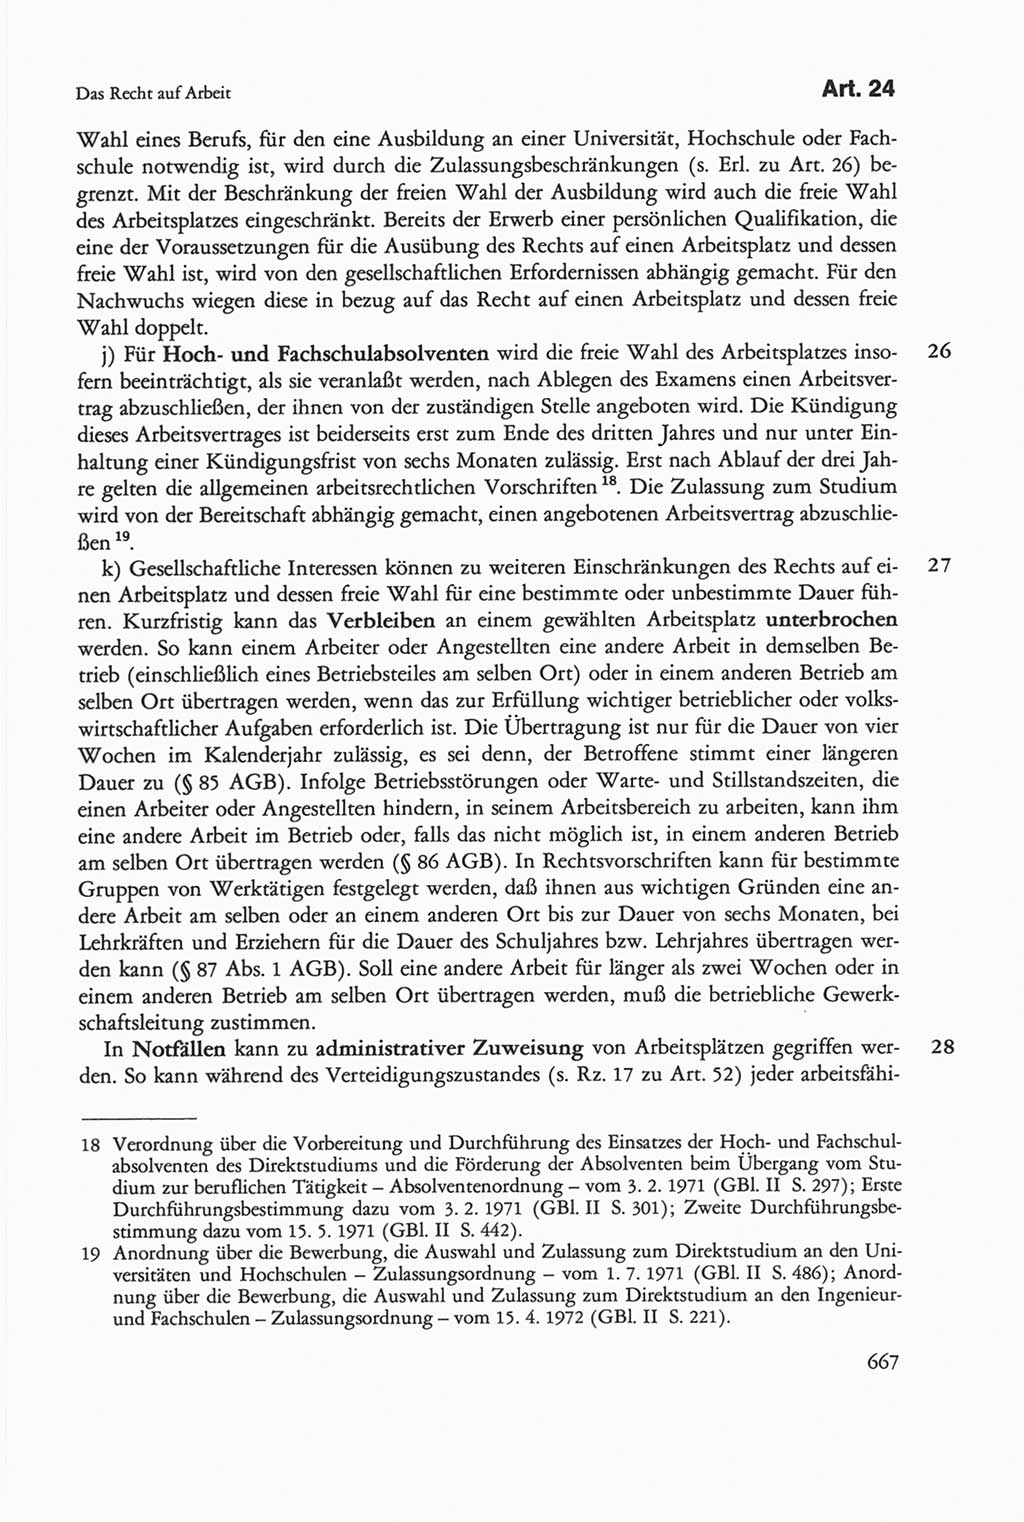 Die sozialistische Verfassung der Deutschen Demokratischen Republik (DDR), Kommentar 1982, Seite 667 (Soz. Verf. DDR Komm. 1982, S. 667)